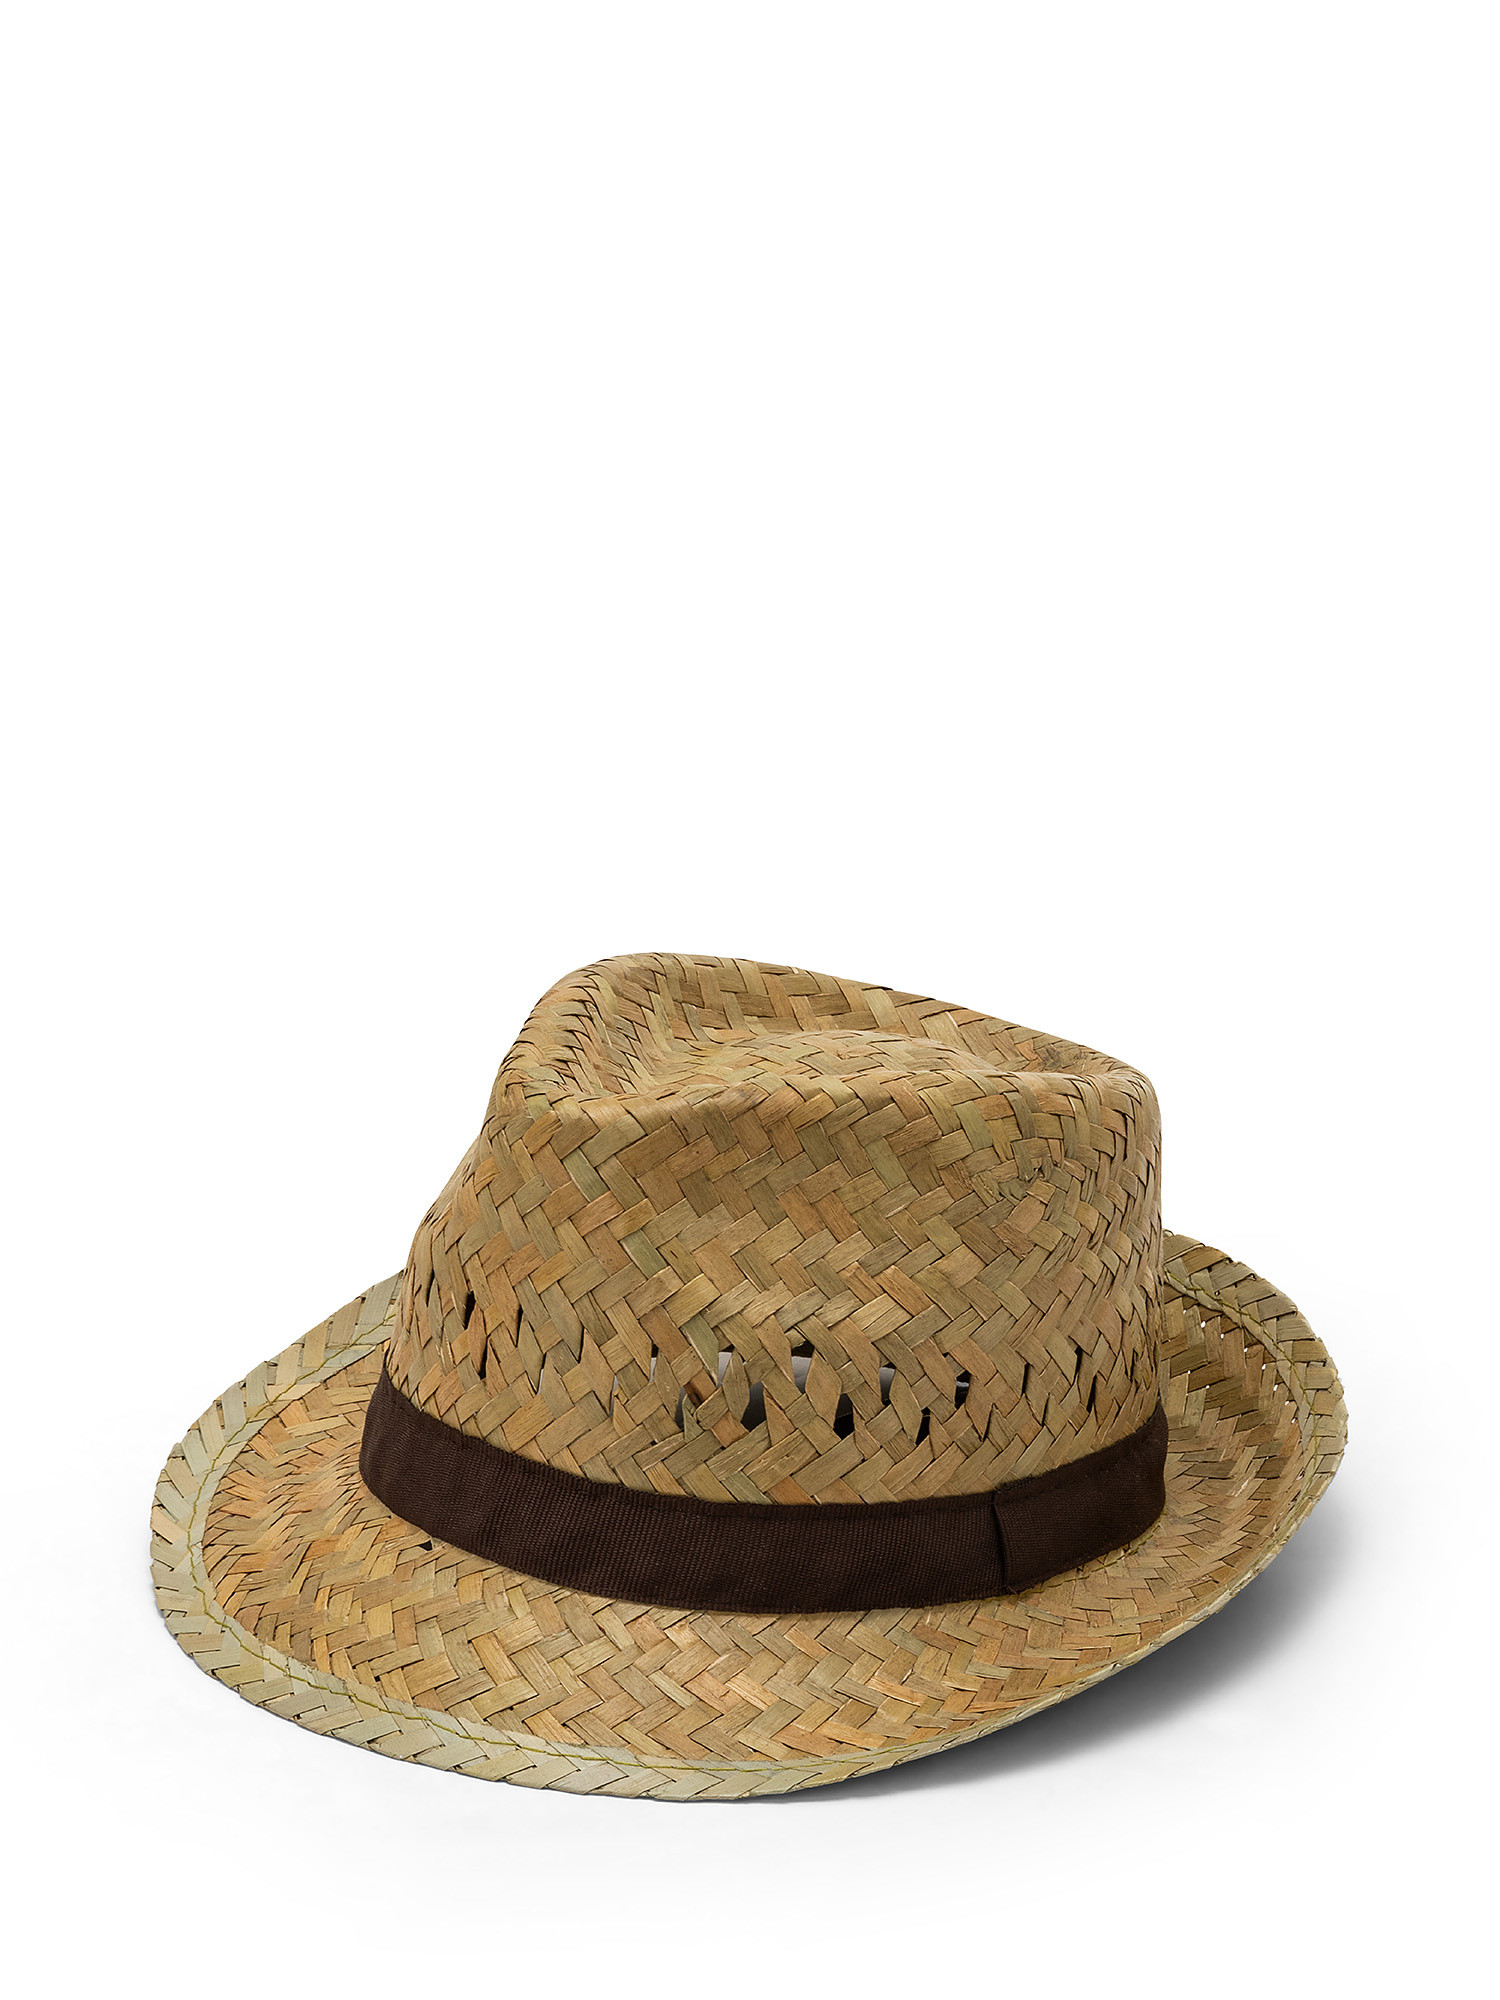 Cappello alpino in paglia, Beige, large